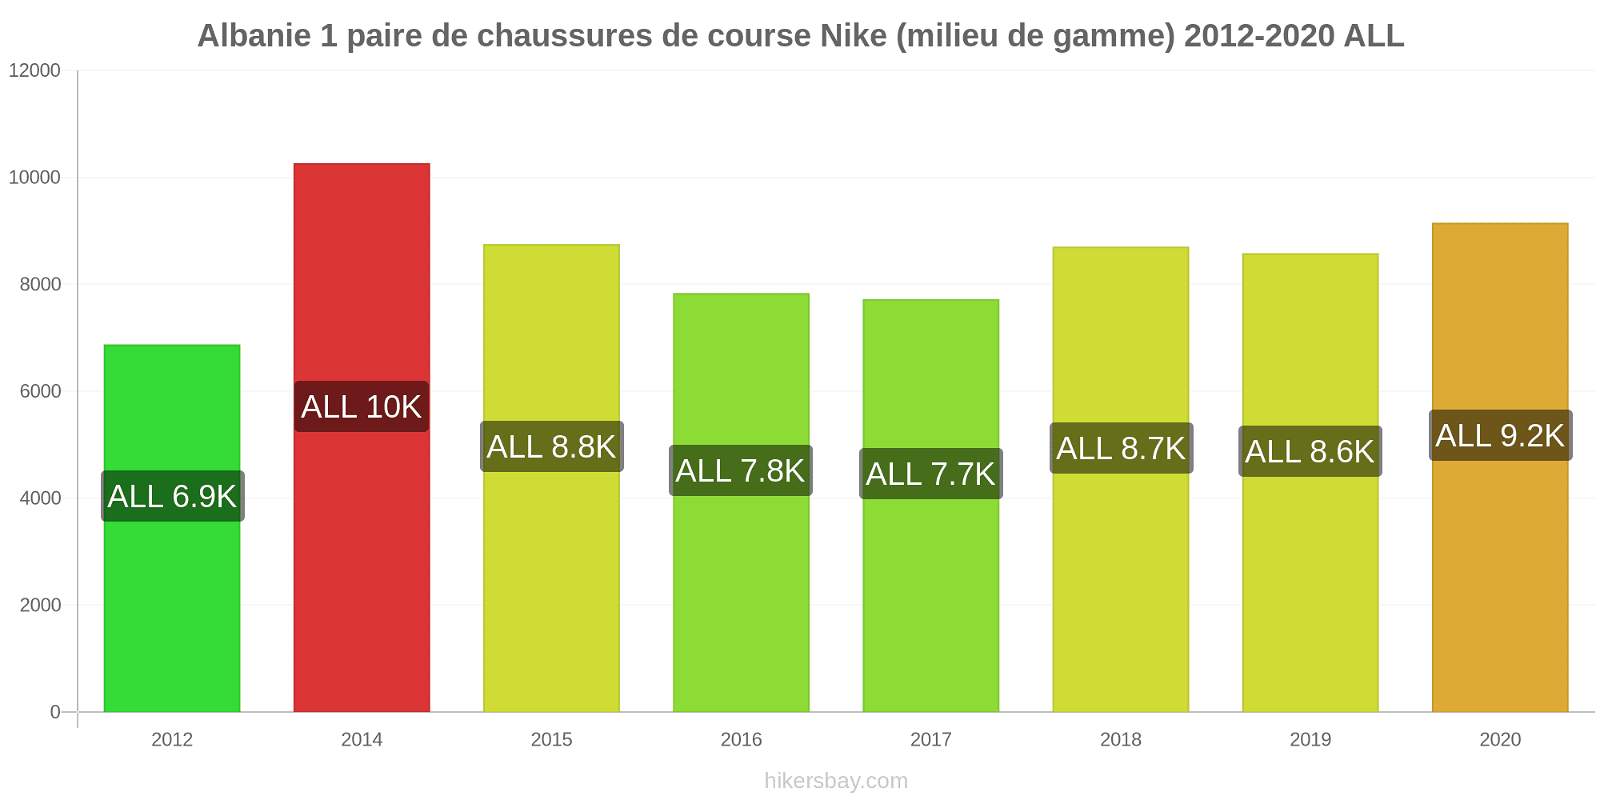 Albanie changements de prix 1 paire de chaussures de course Nike (milieu de gamme) hikersbay.com